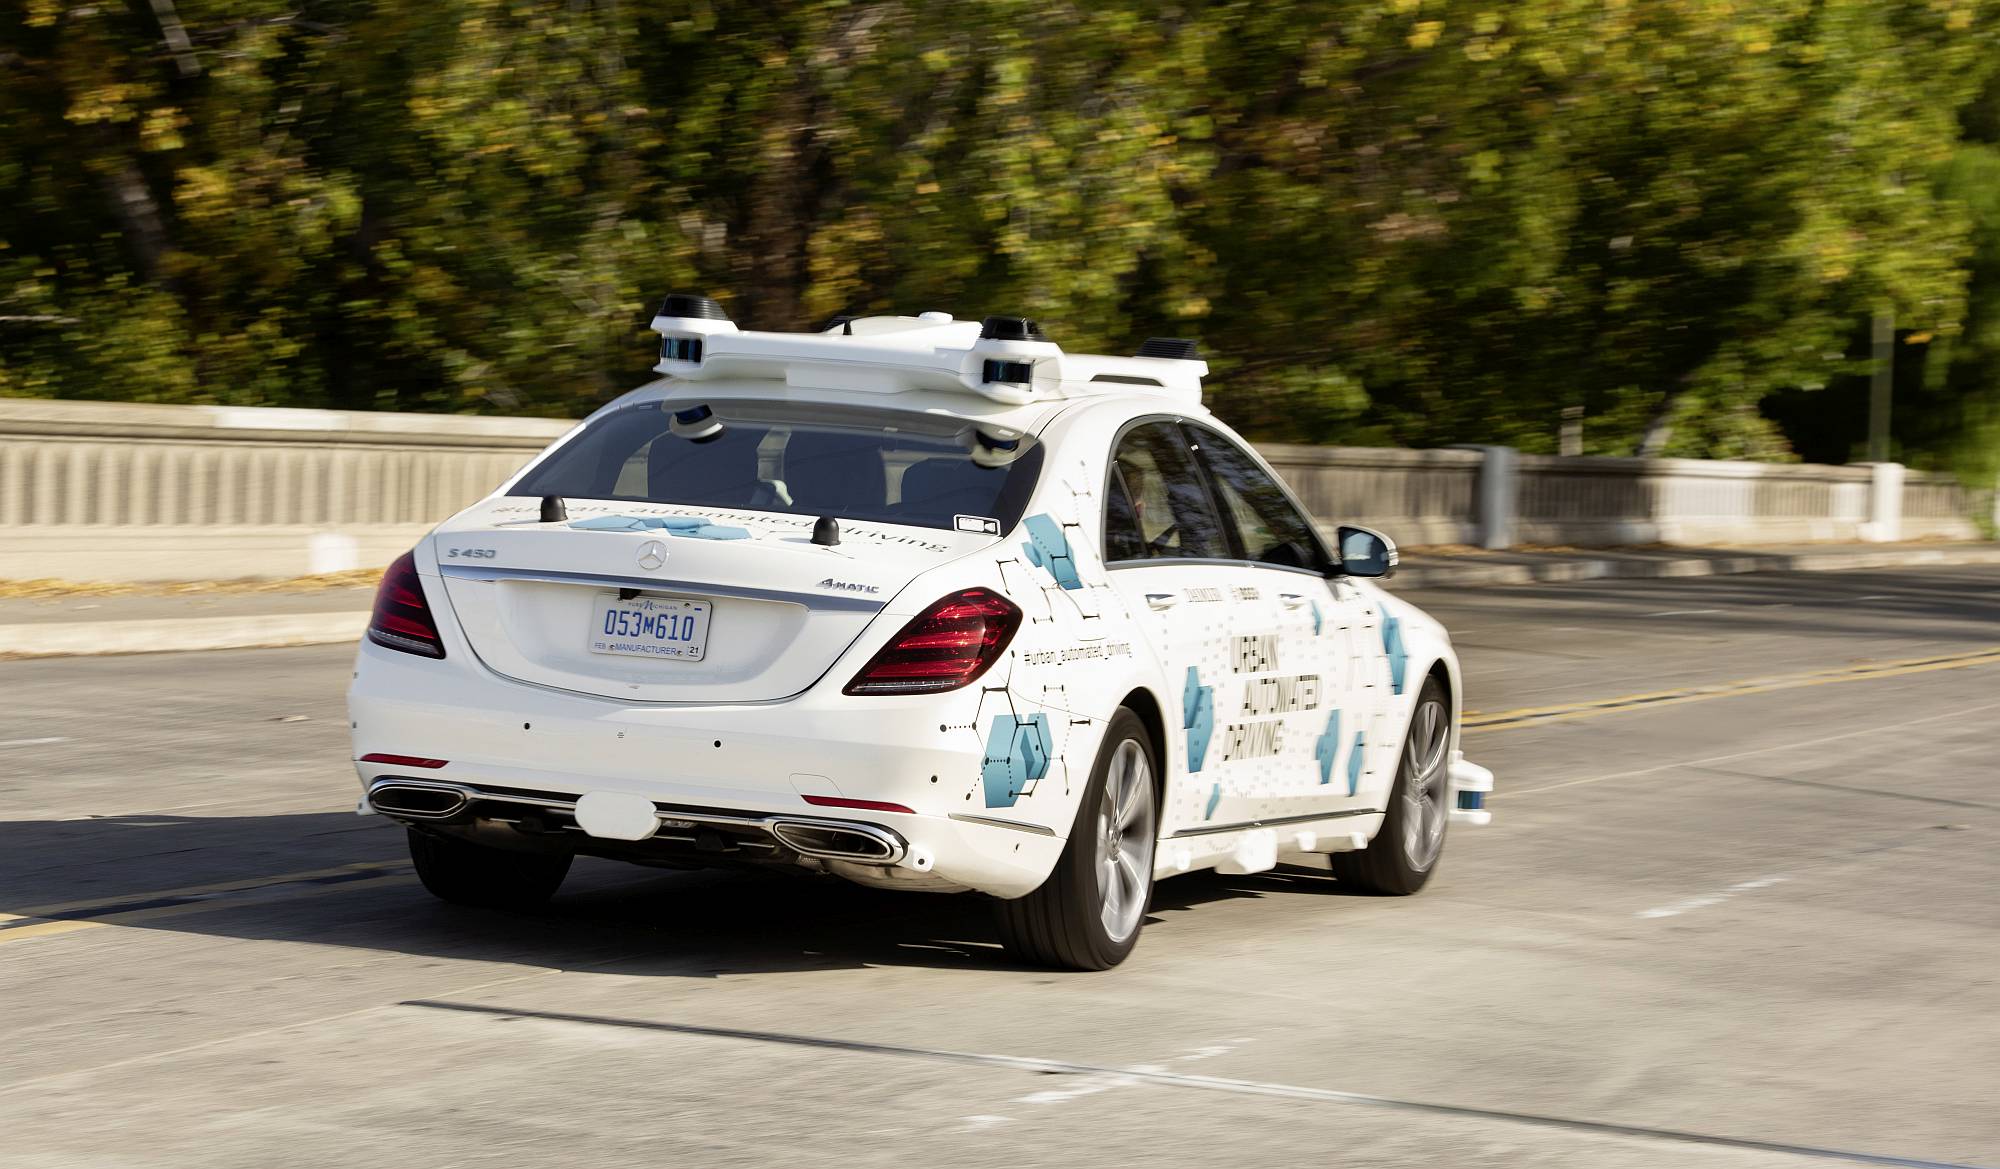 Mercedes-Benz und Bosch starten mit San José Pilotprojekt für automatisierten Mitfahrservice

Mercedes-Benz and Bosch start San José pilot project for automated ride-hailing service